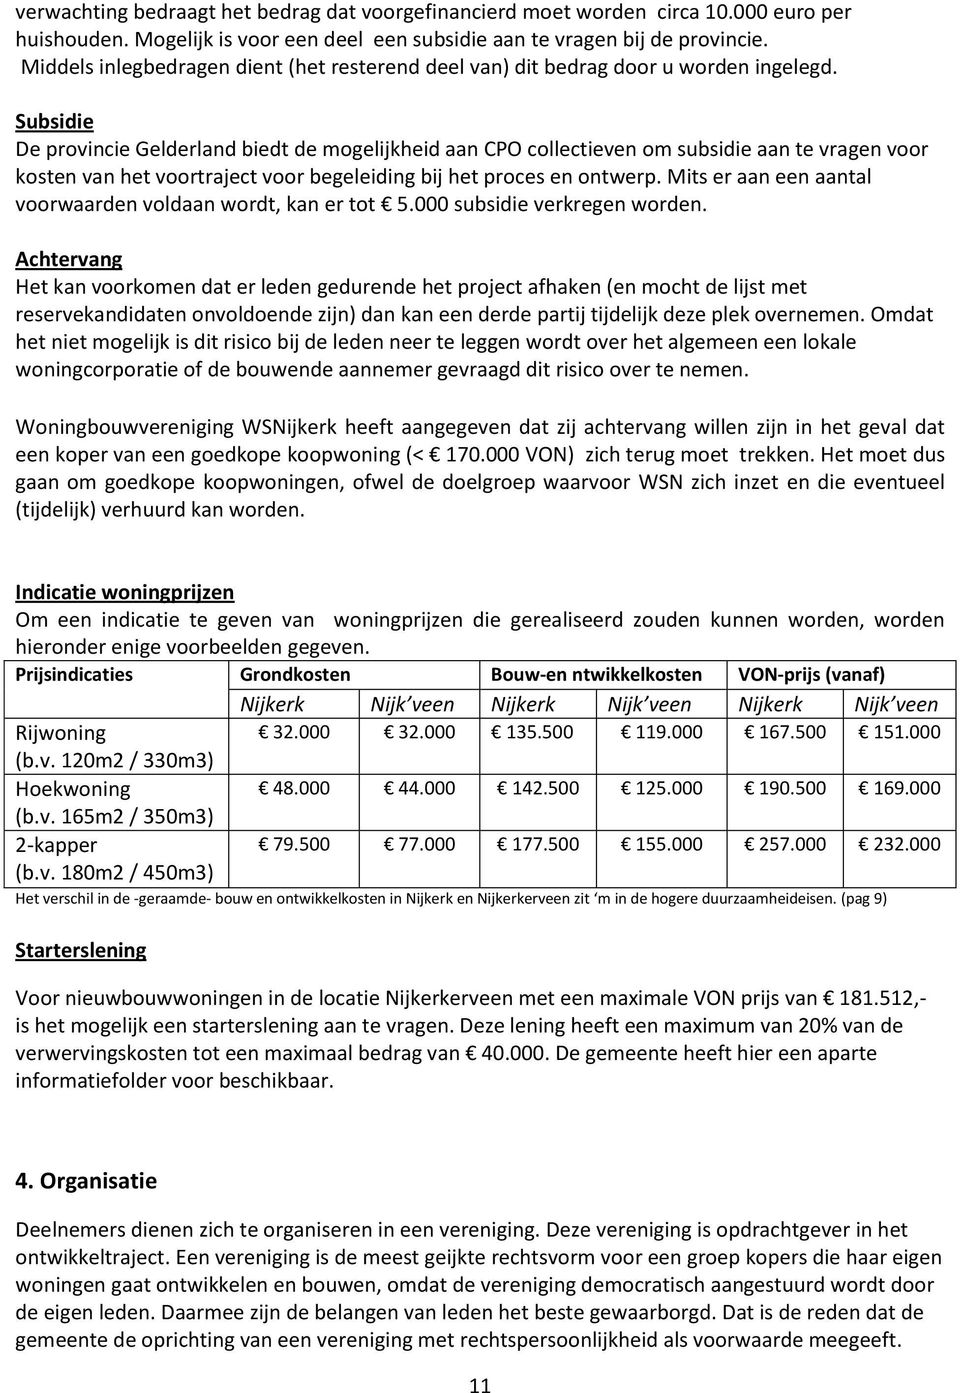 Subsidie De provincie Gelderland biedt de mogelijkheid aan CPO collectieven om subsidie aan te vragen voor kosten van het voortraject voor begeleiding bij het proces en ontwerp.